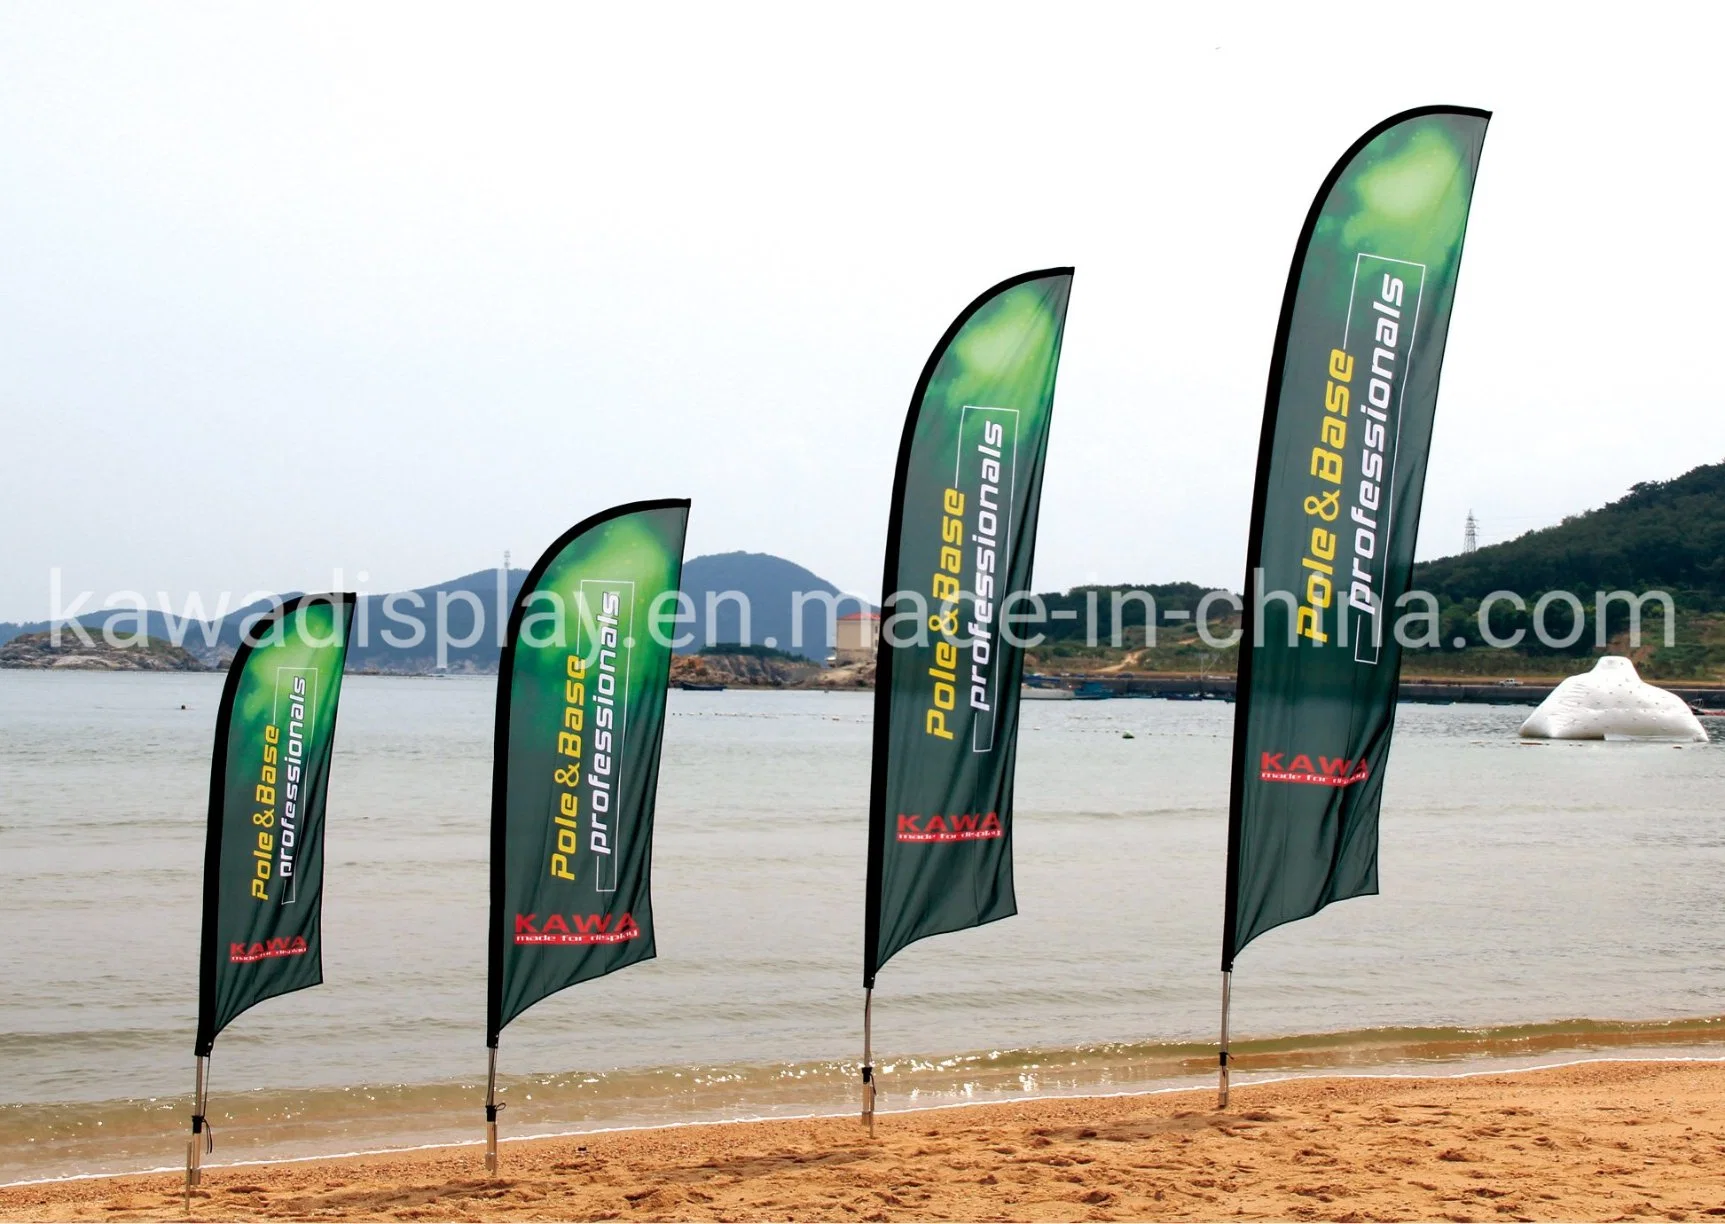 Feder Flagge Werbe-Nutzung Werbeausstellung Event Im Freien Flying Beach Flag Banner Tropfenflagge mit Kreuzfuß